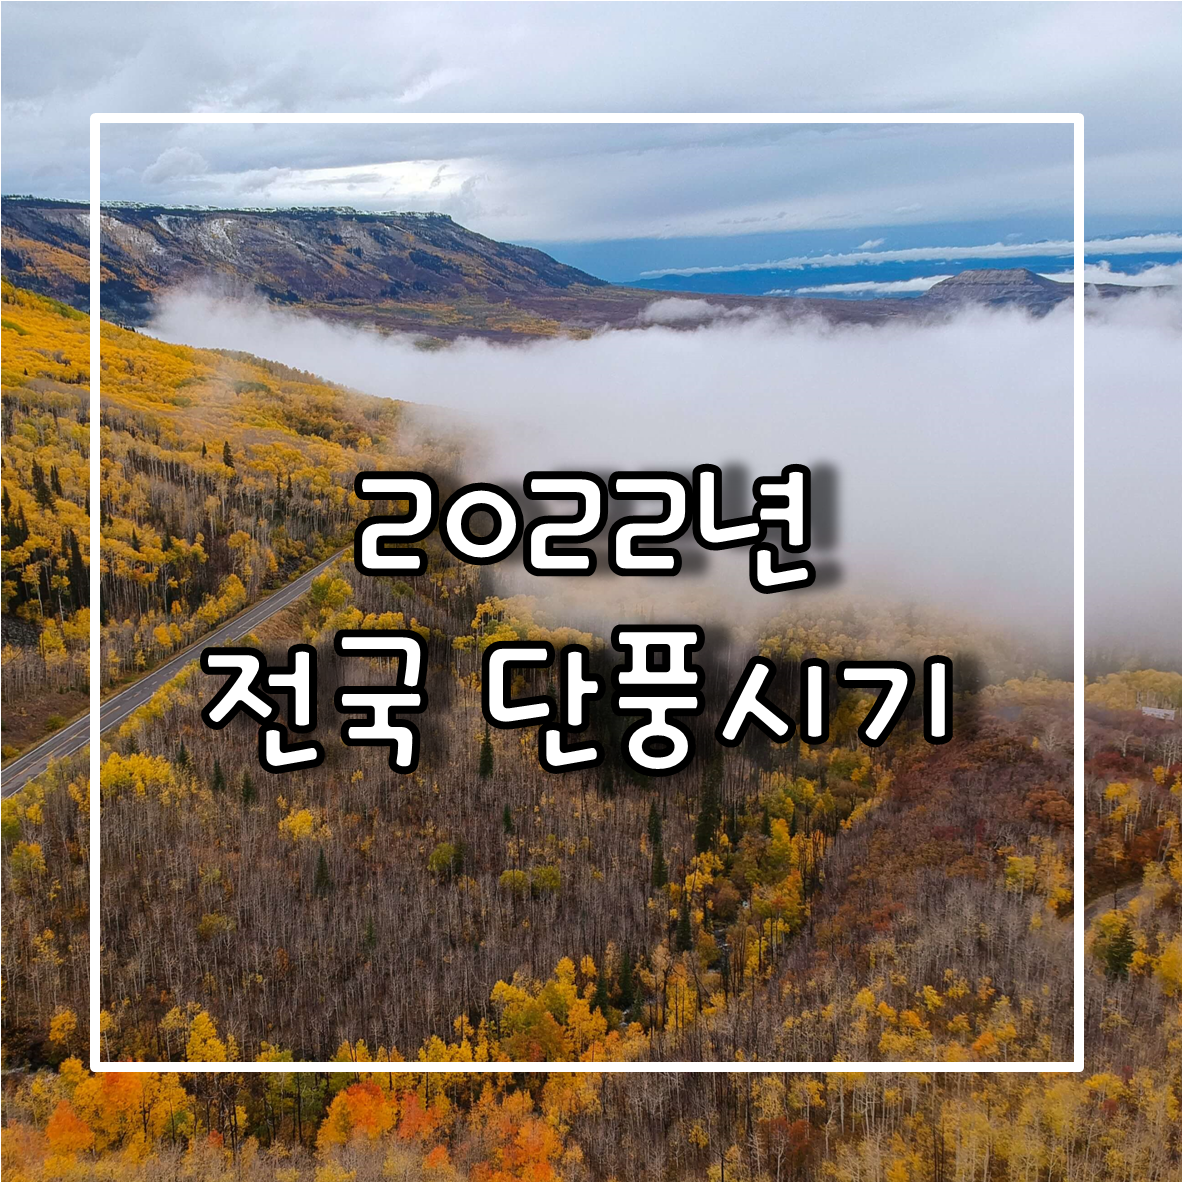 2022년 전국 단풍절정시기 및 국내 단풍명소